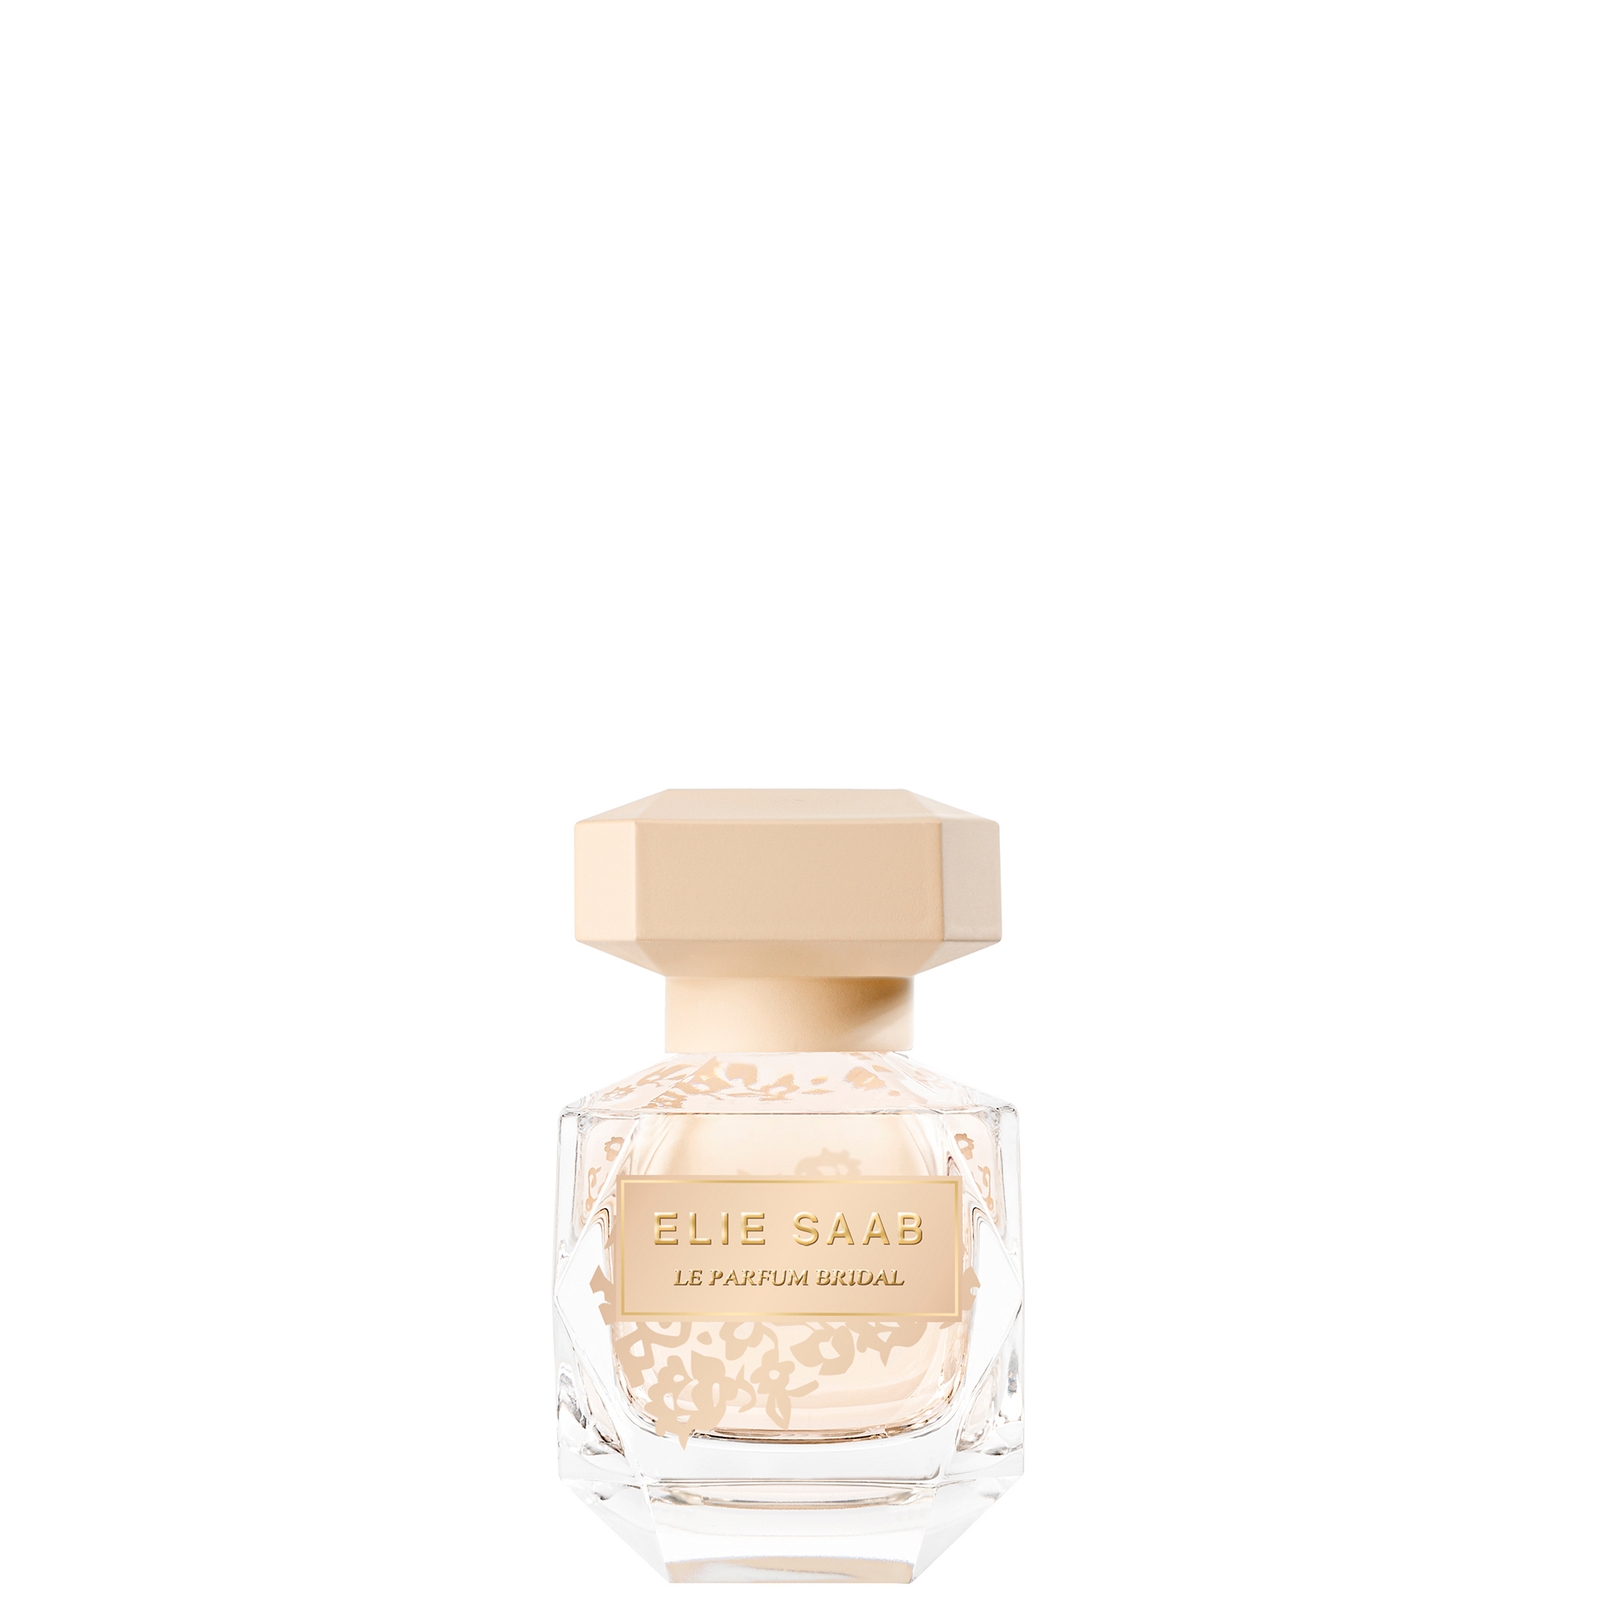 Image of Elie Saab Le Parfum Bridal Eau de Parfum Spray 30ml